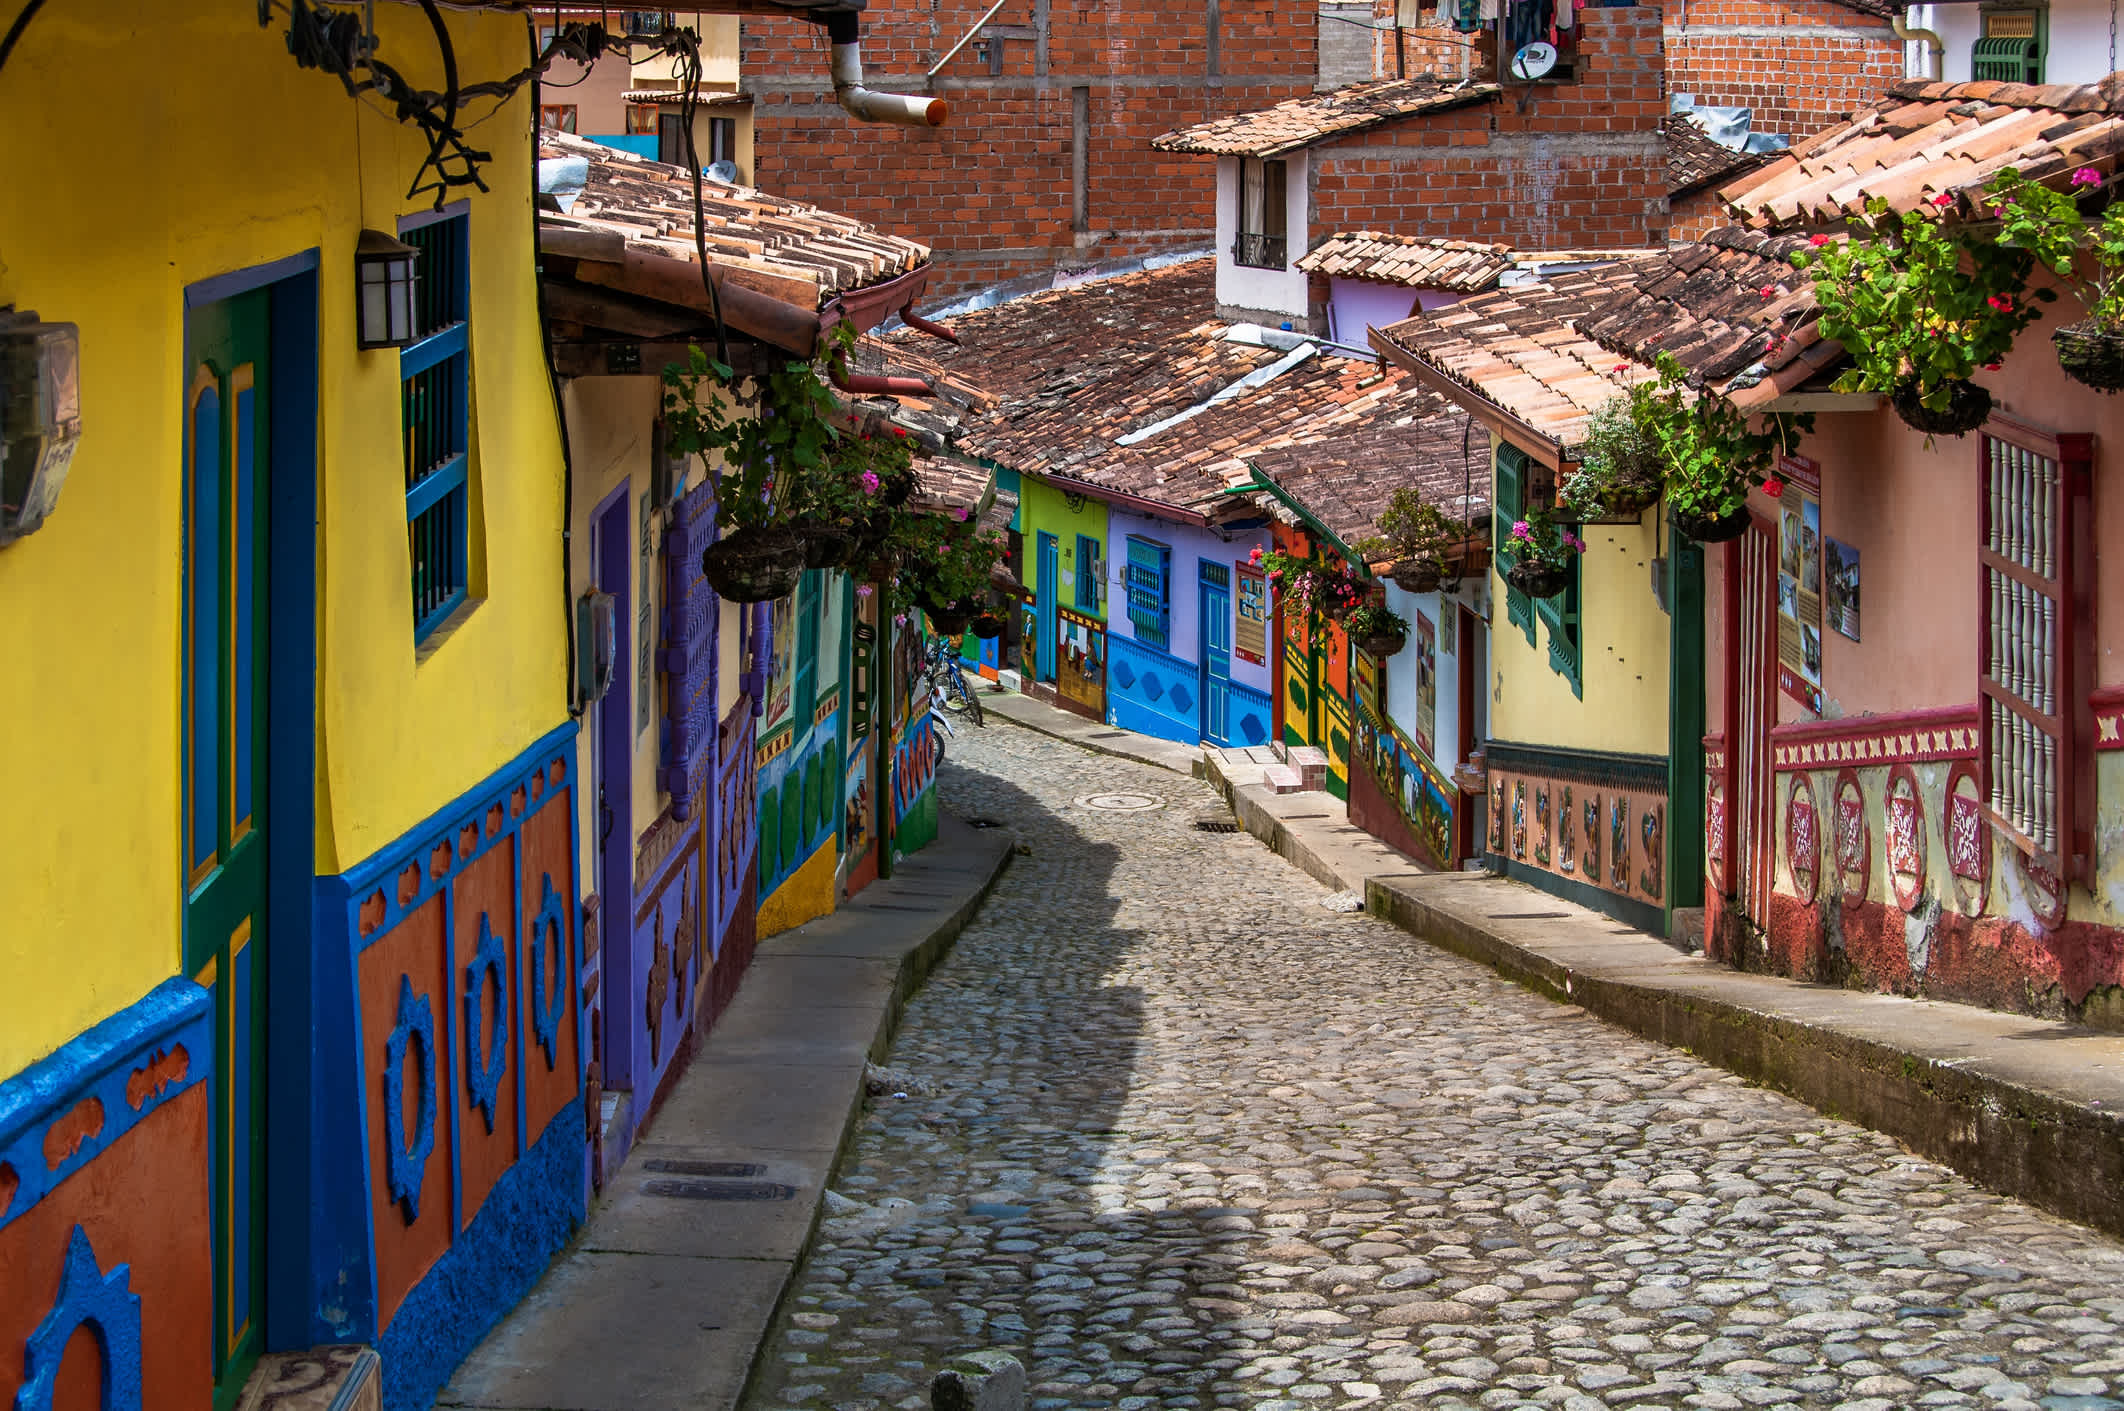 Maisons colorées dans une rue typique de Guatape près de Medellin en Colombie.